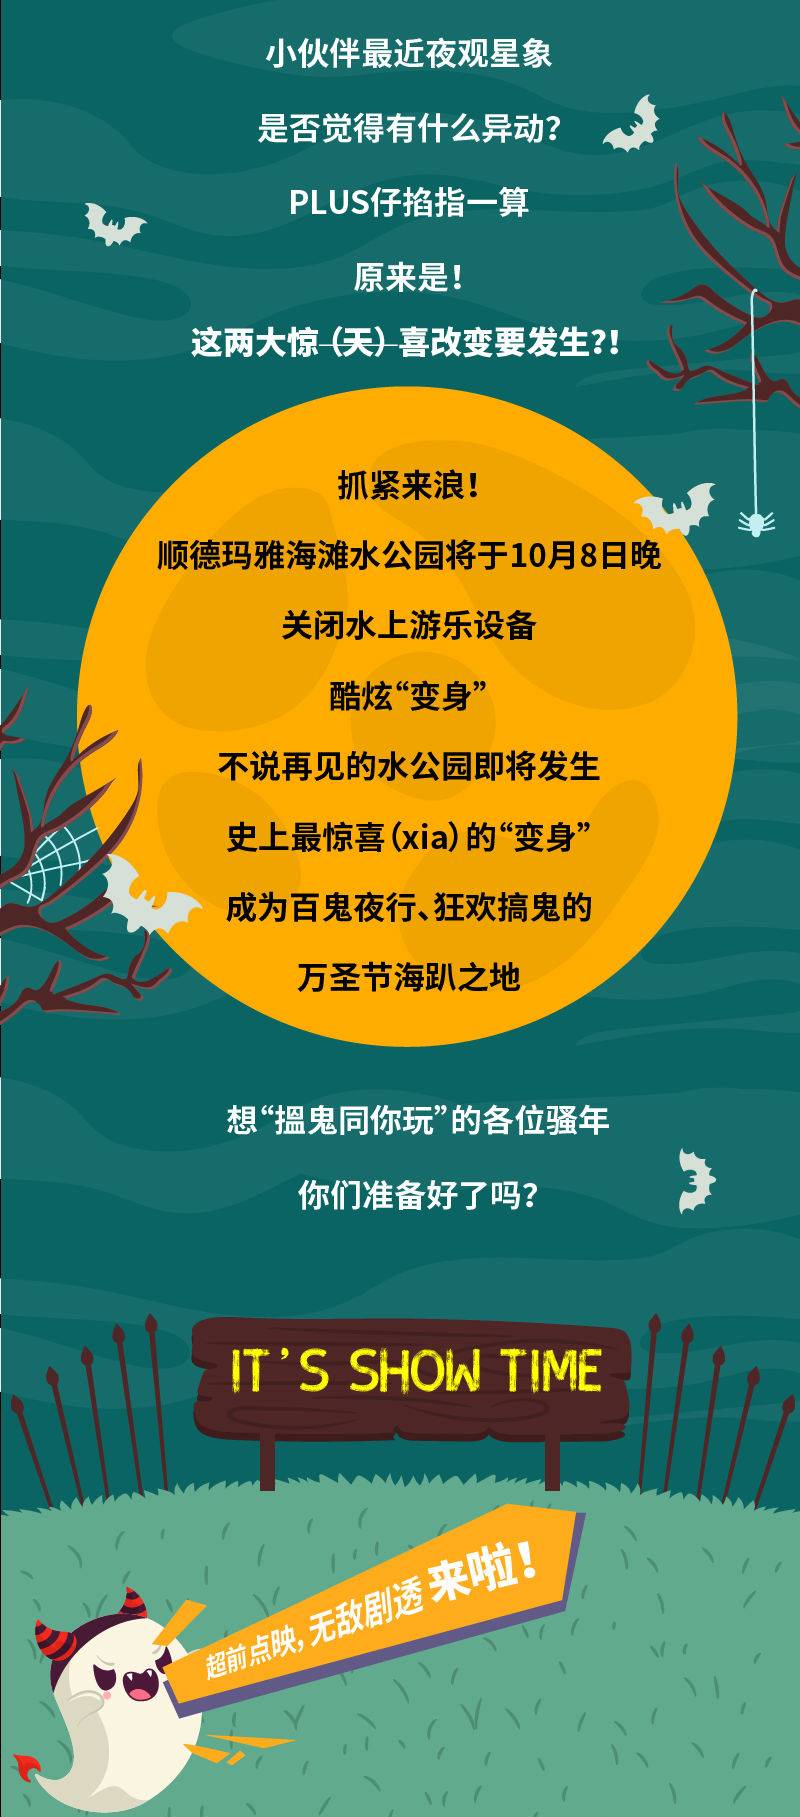 【电子票】顺德华侨城欢乐海岸PLUS-万圣节尖叫畅玩票 2021